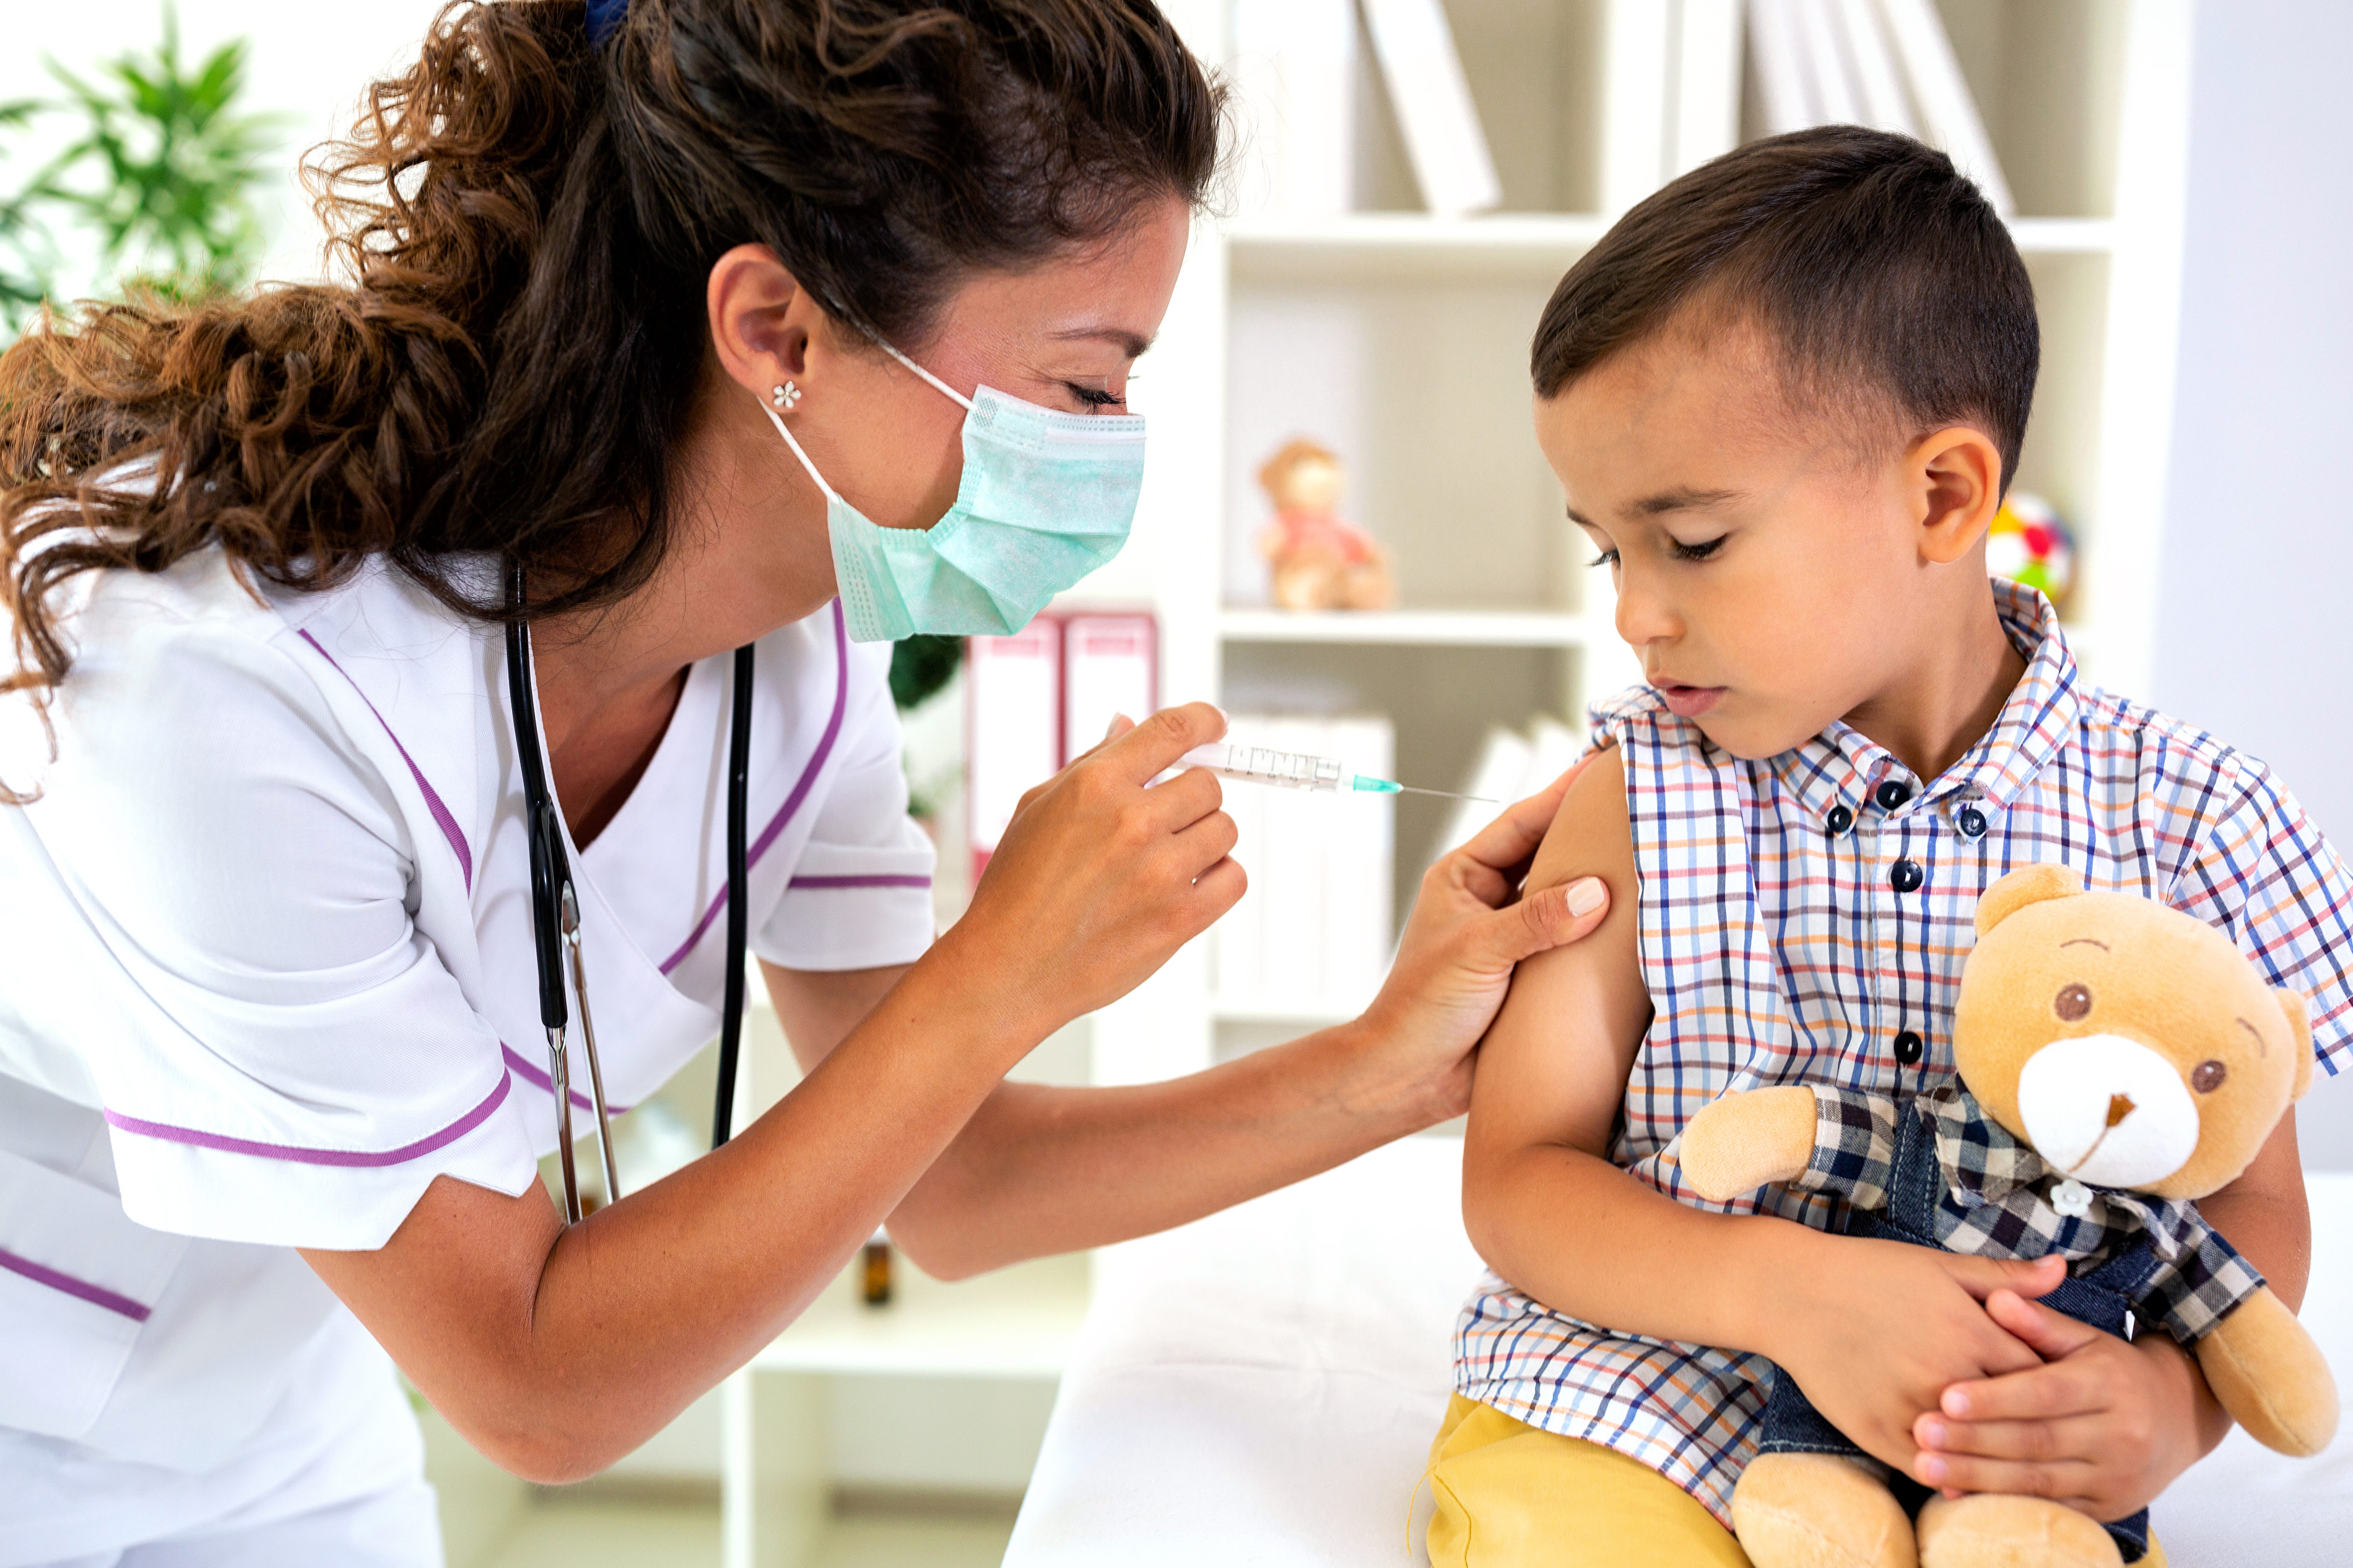 舊金山疫情最嚴重的地區 優先接種兒童疫苗